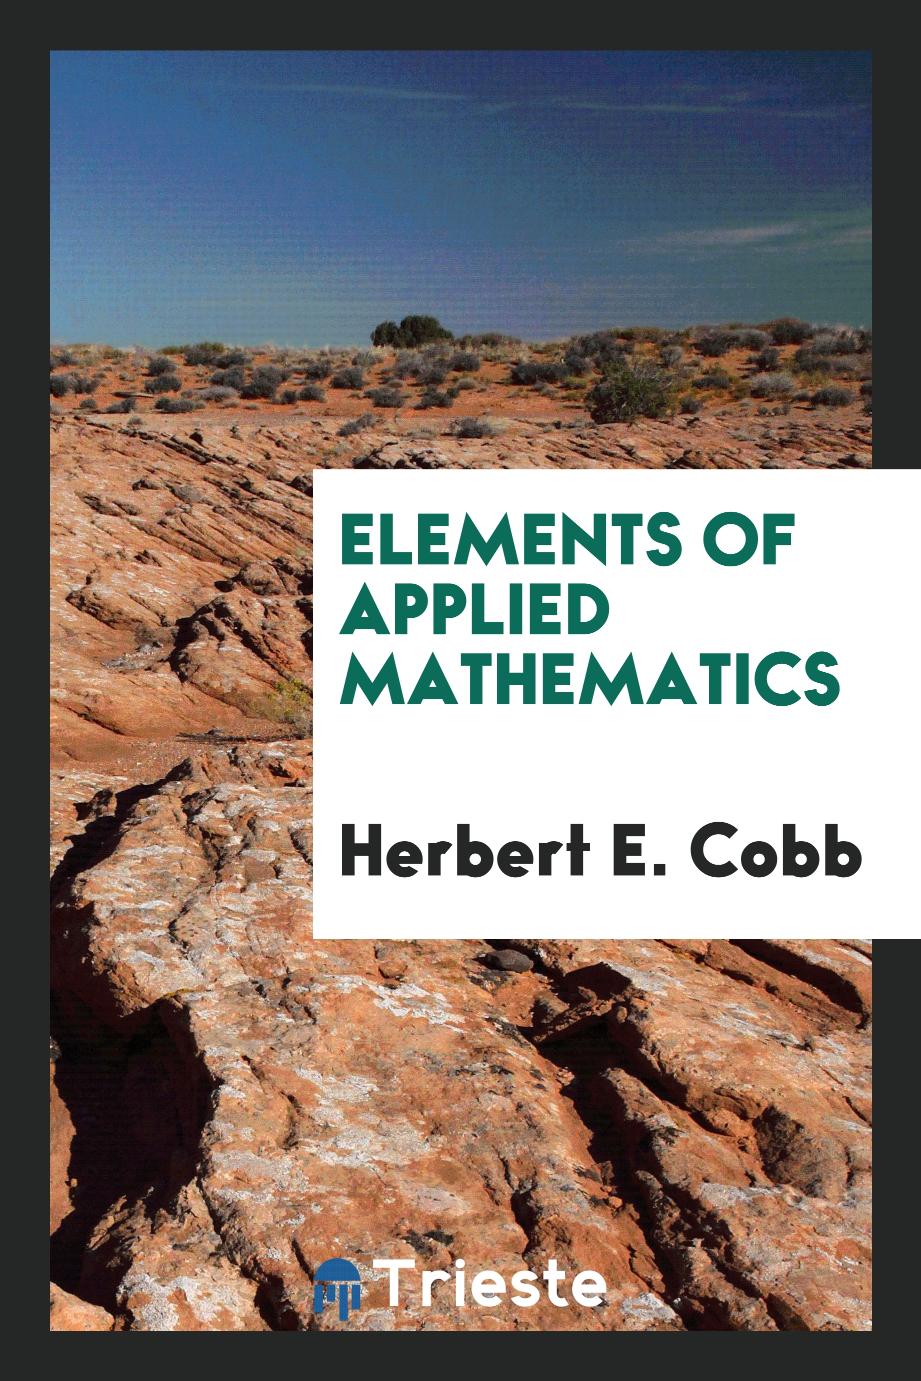 Herbert E. Cobb - Elements of applied mathematics